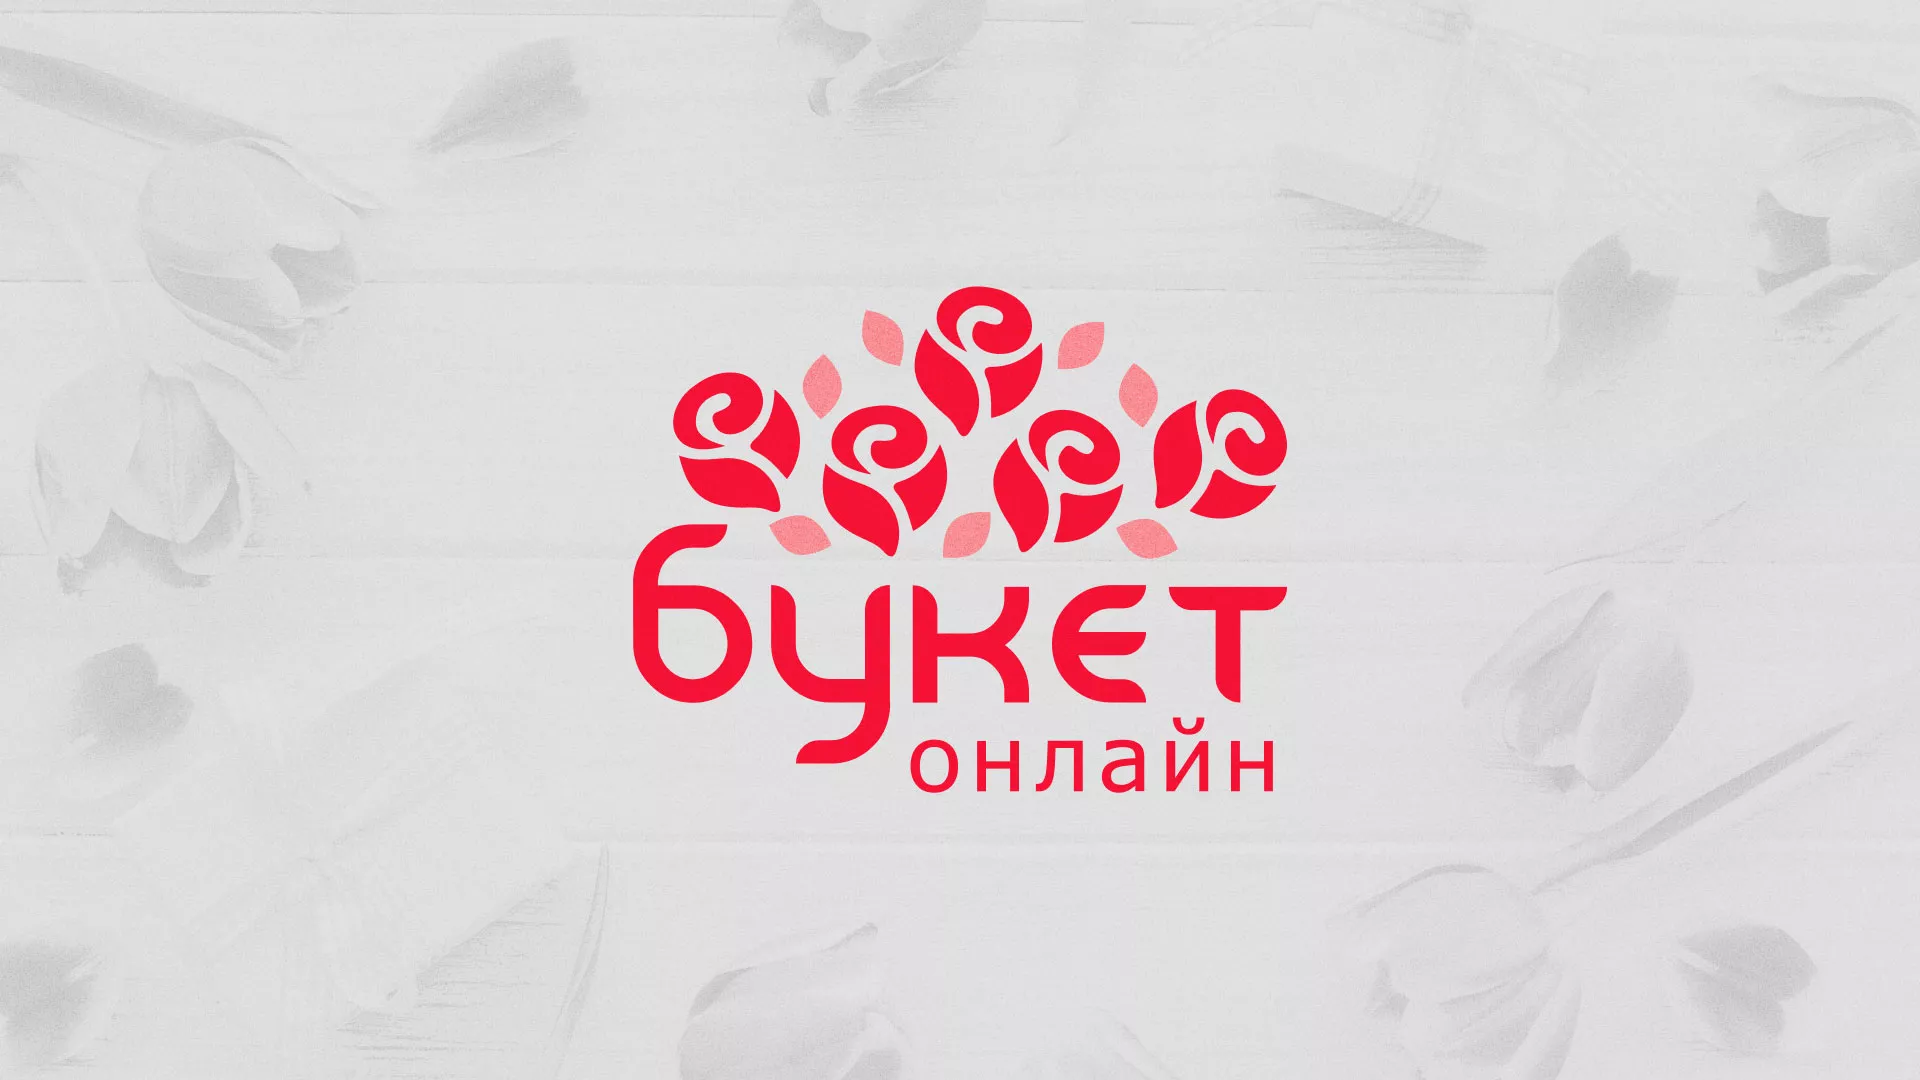 Создание интернет-магазина «Букет-онлайн» по цветам в Опочке